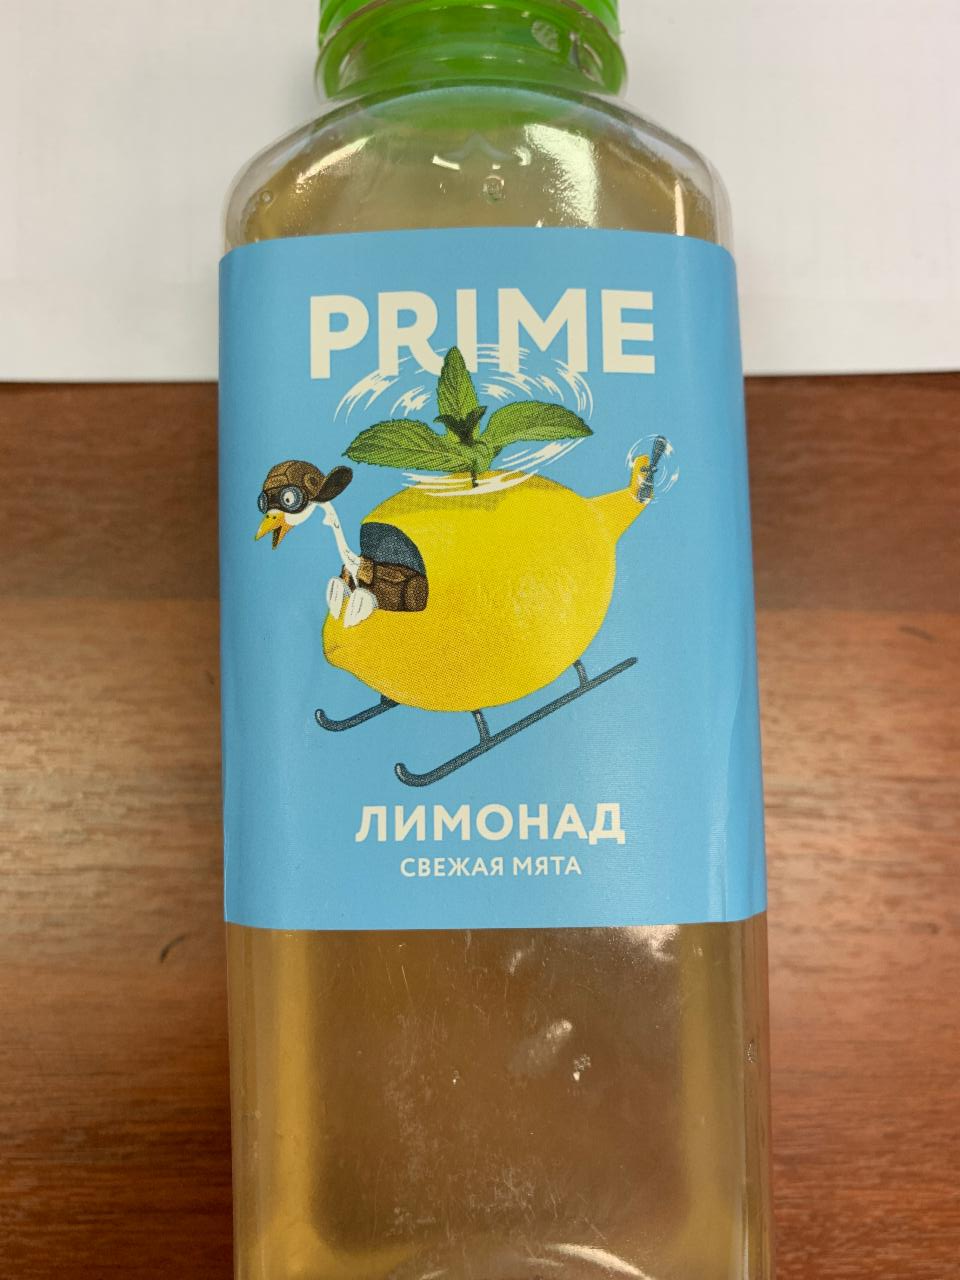 Фото - лимонад свежая мята Prime